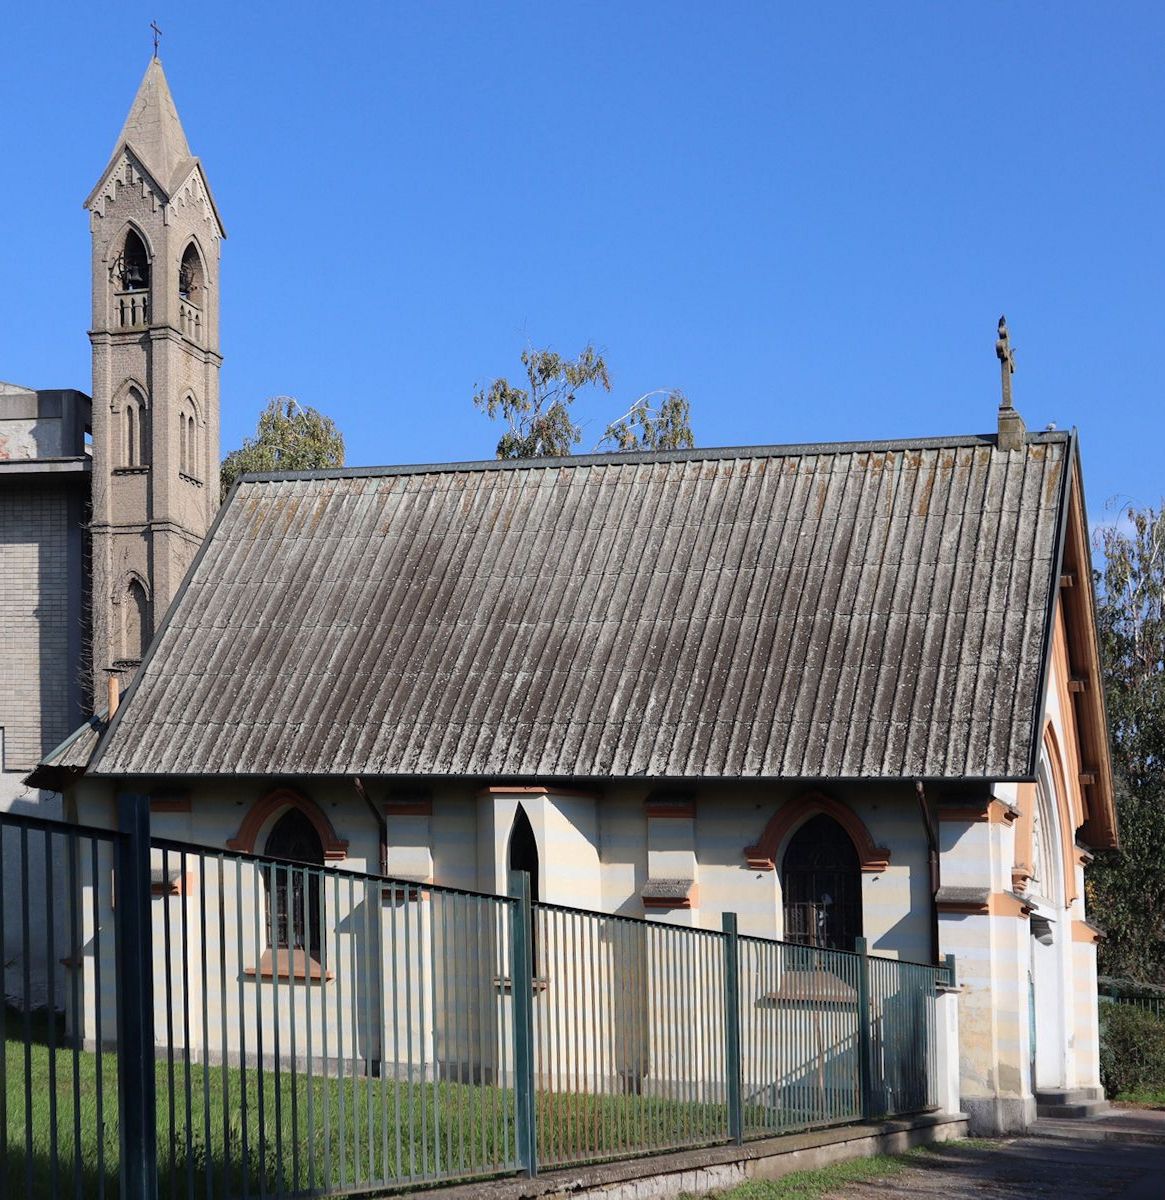 Kapelle in Magenta, in der Gianna Beretta als Jugenliche regelmäßig betete